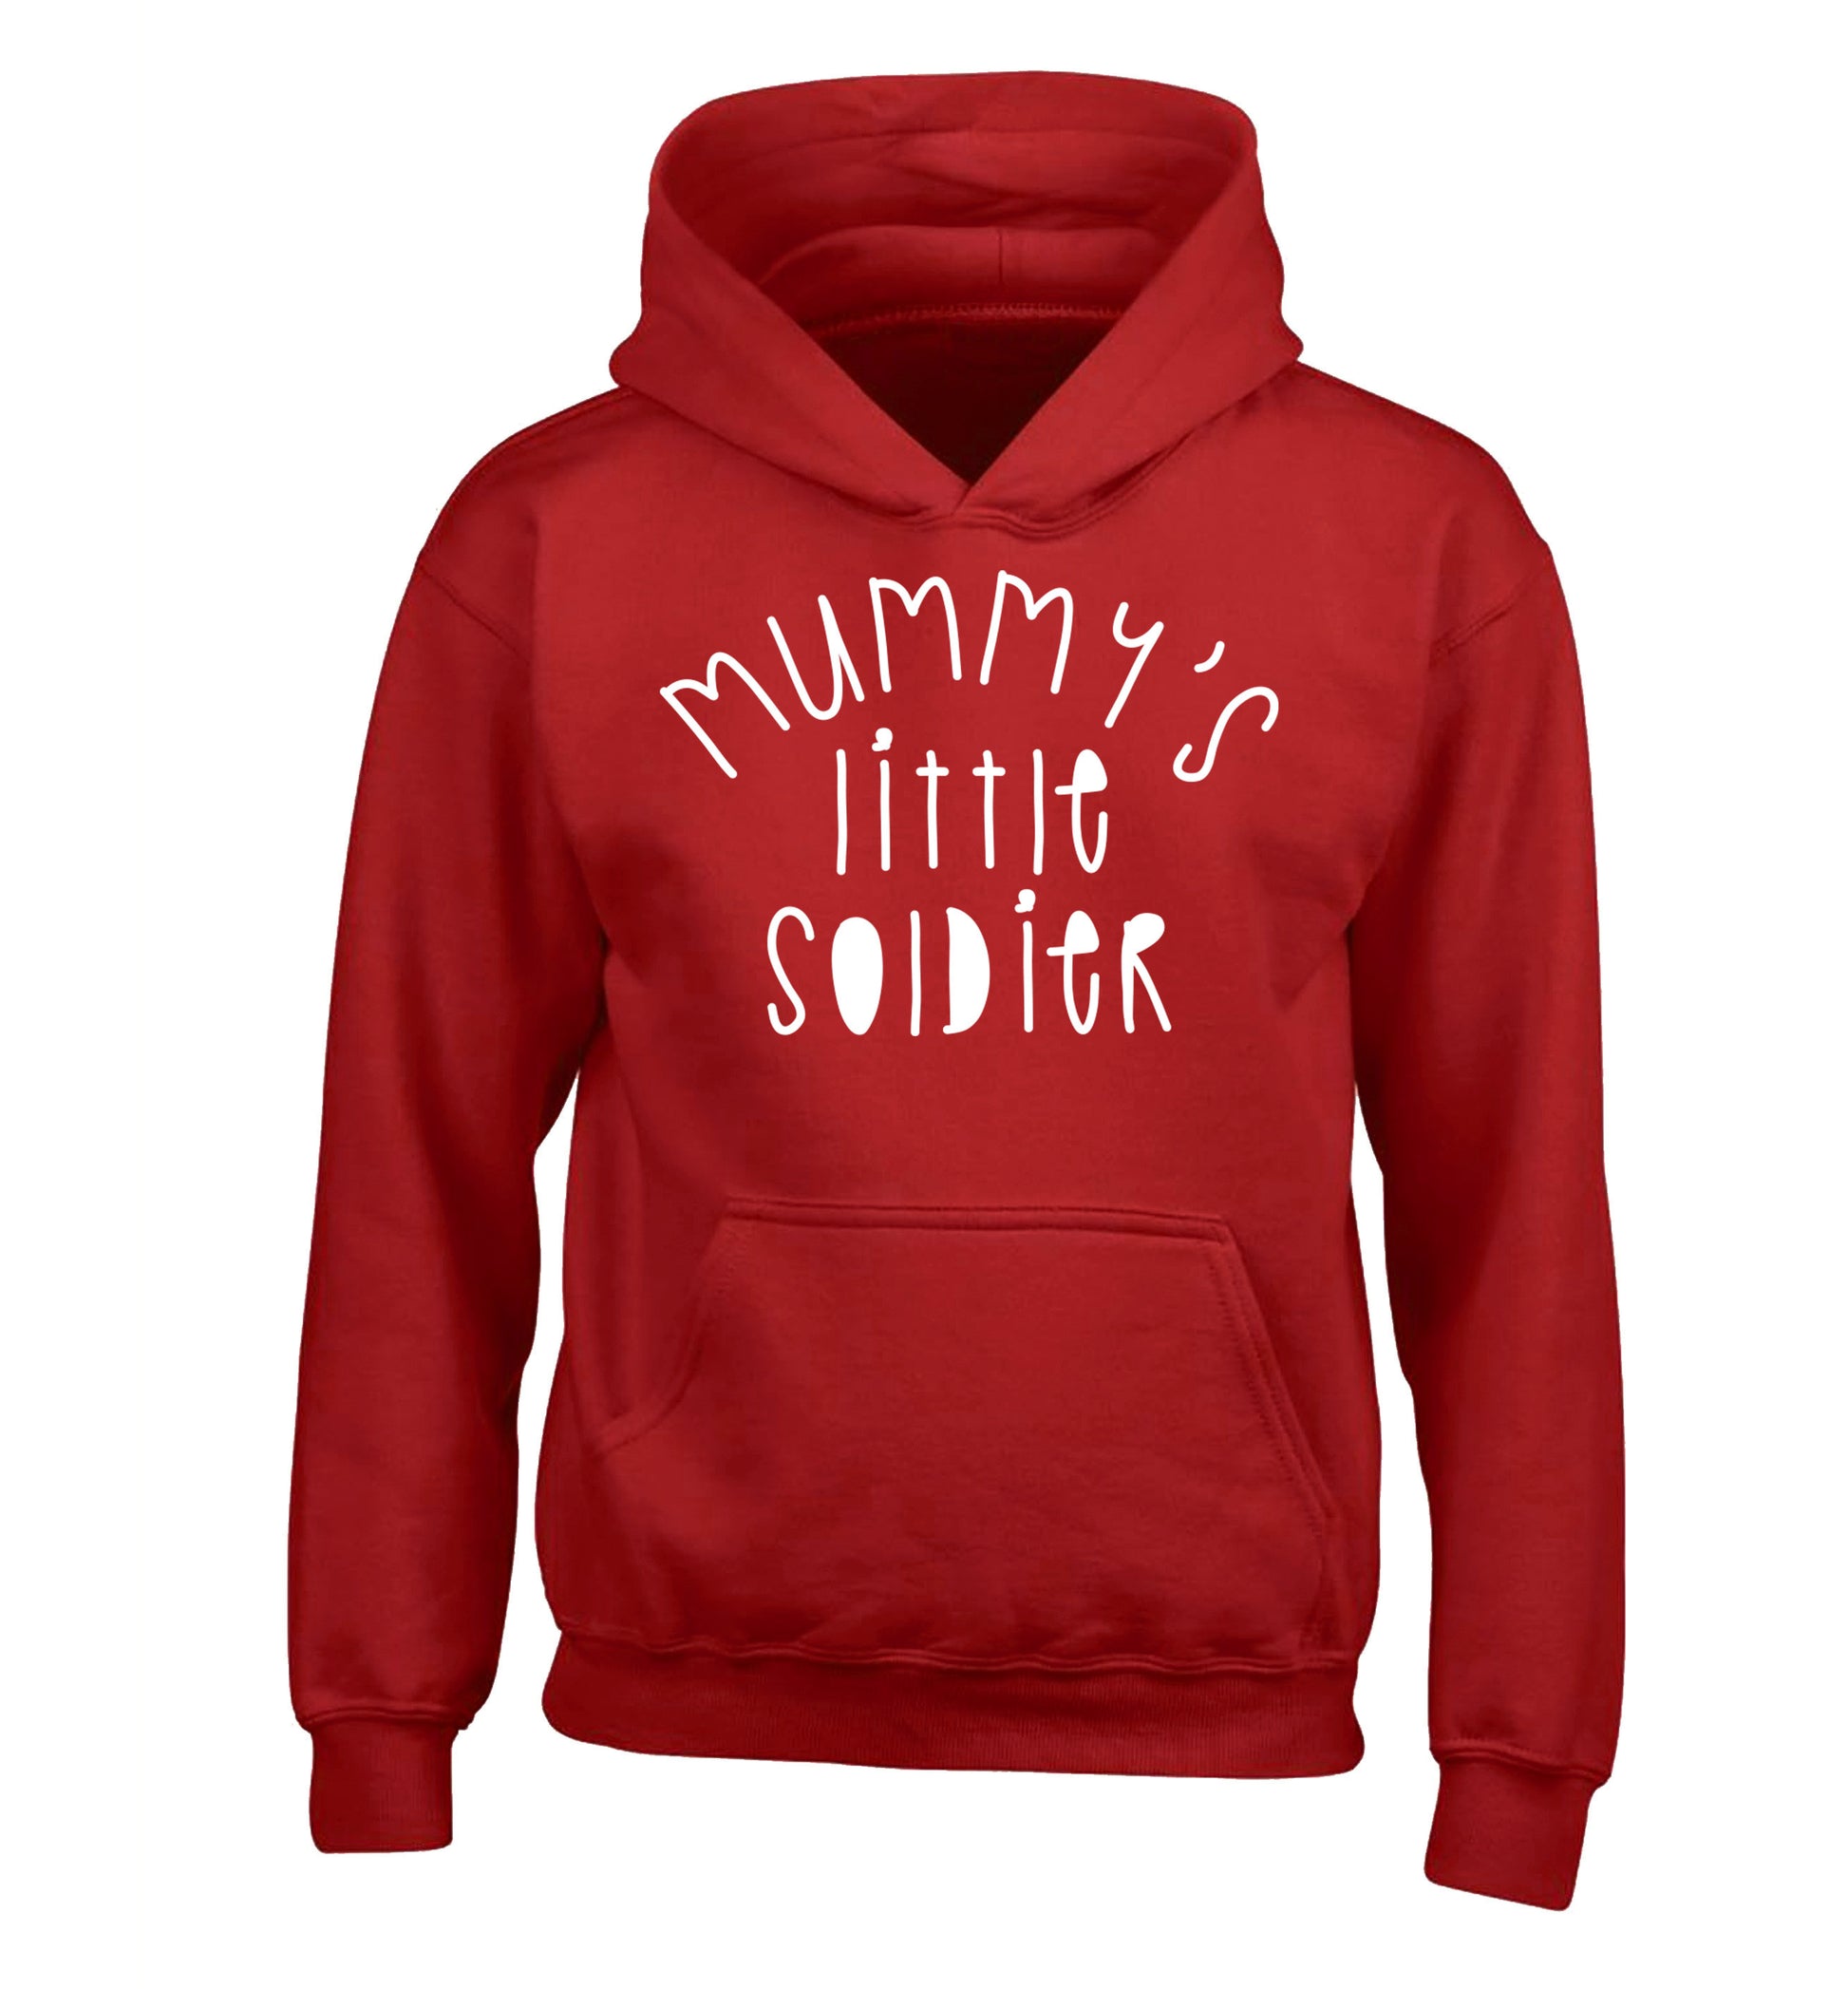 Mummy's little soldier children's red hoodie 12-14 Years